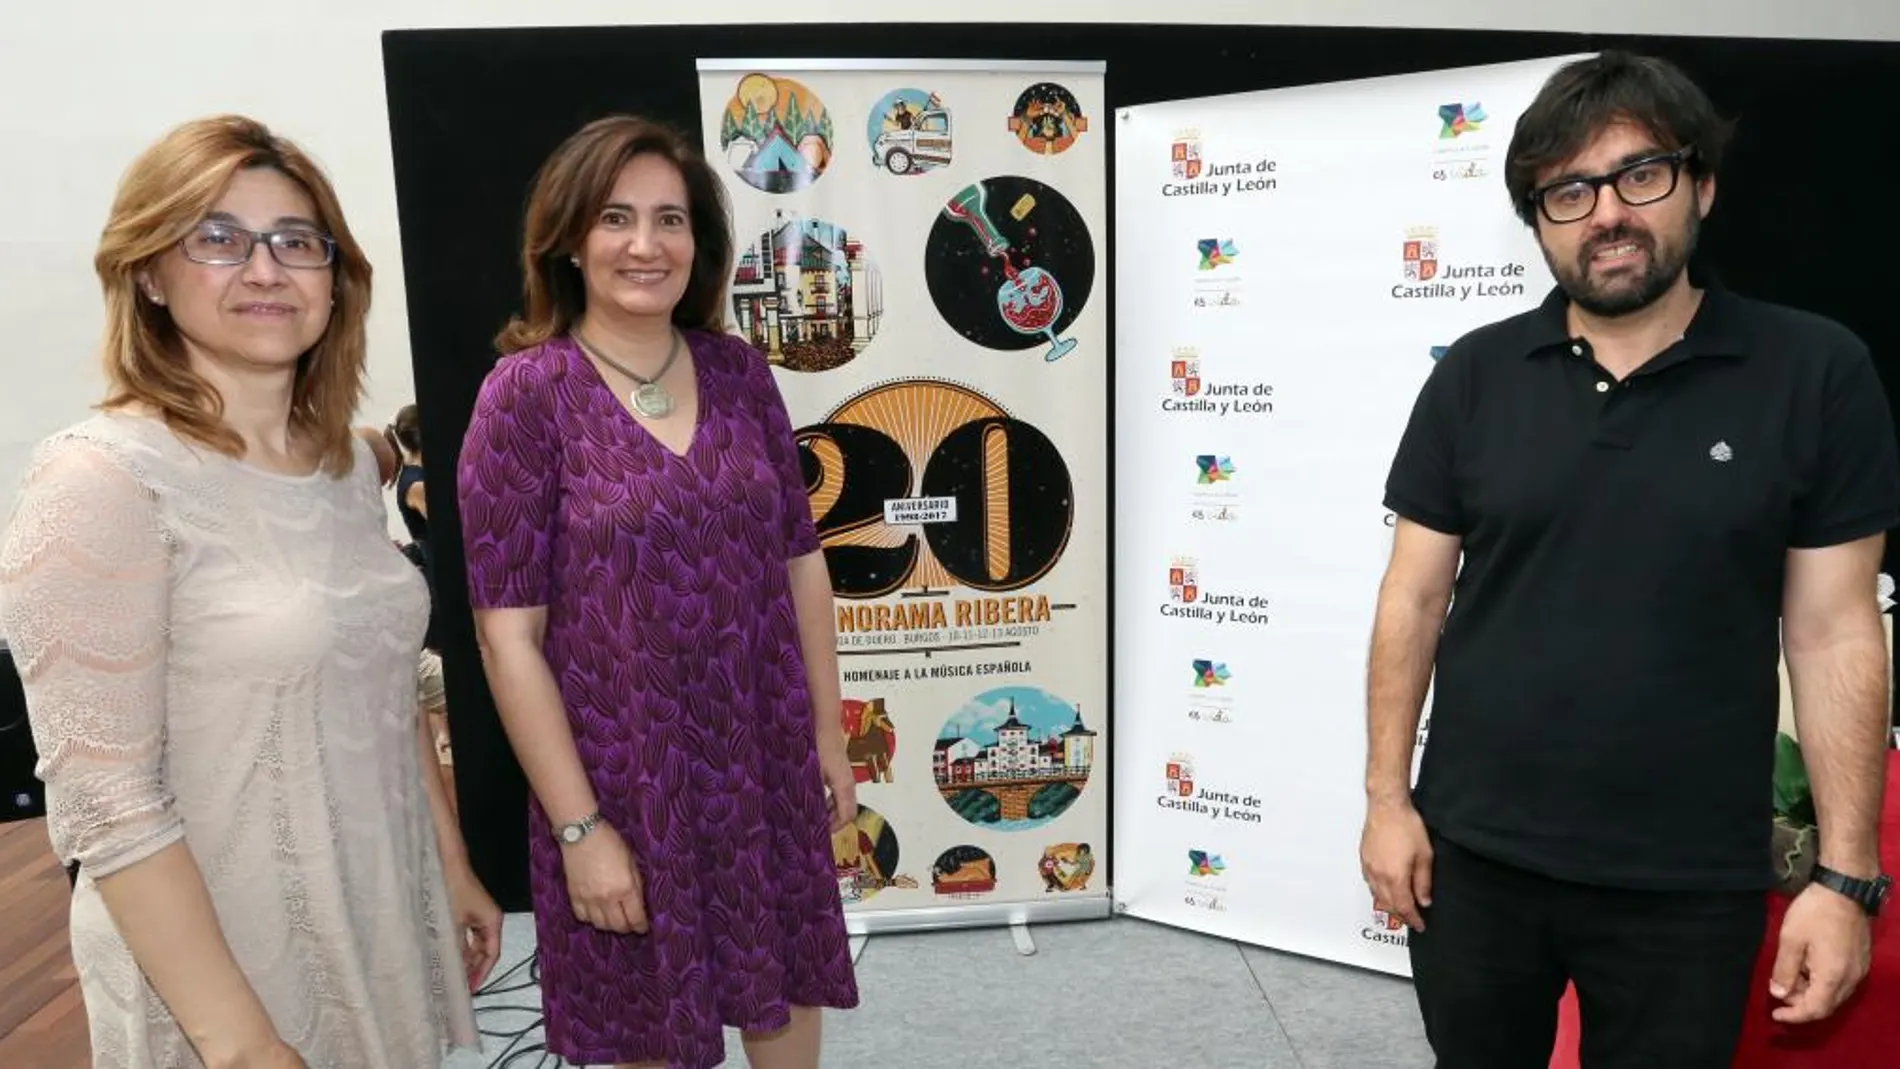 La consejera de Cultura y Turismo, María Josefa García Cirac, presenta la XX edición del festival Sonorama Ribera junto a la alcaldesa de Aranda de Duero (Burgos), Raquel González, y el productor del festival, Juan Carlos de la Fuente